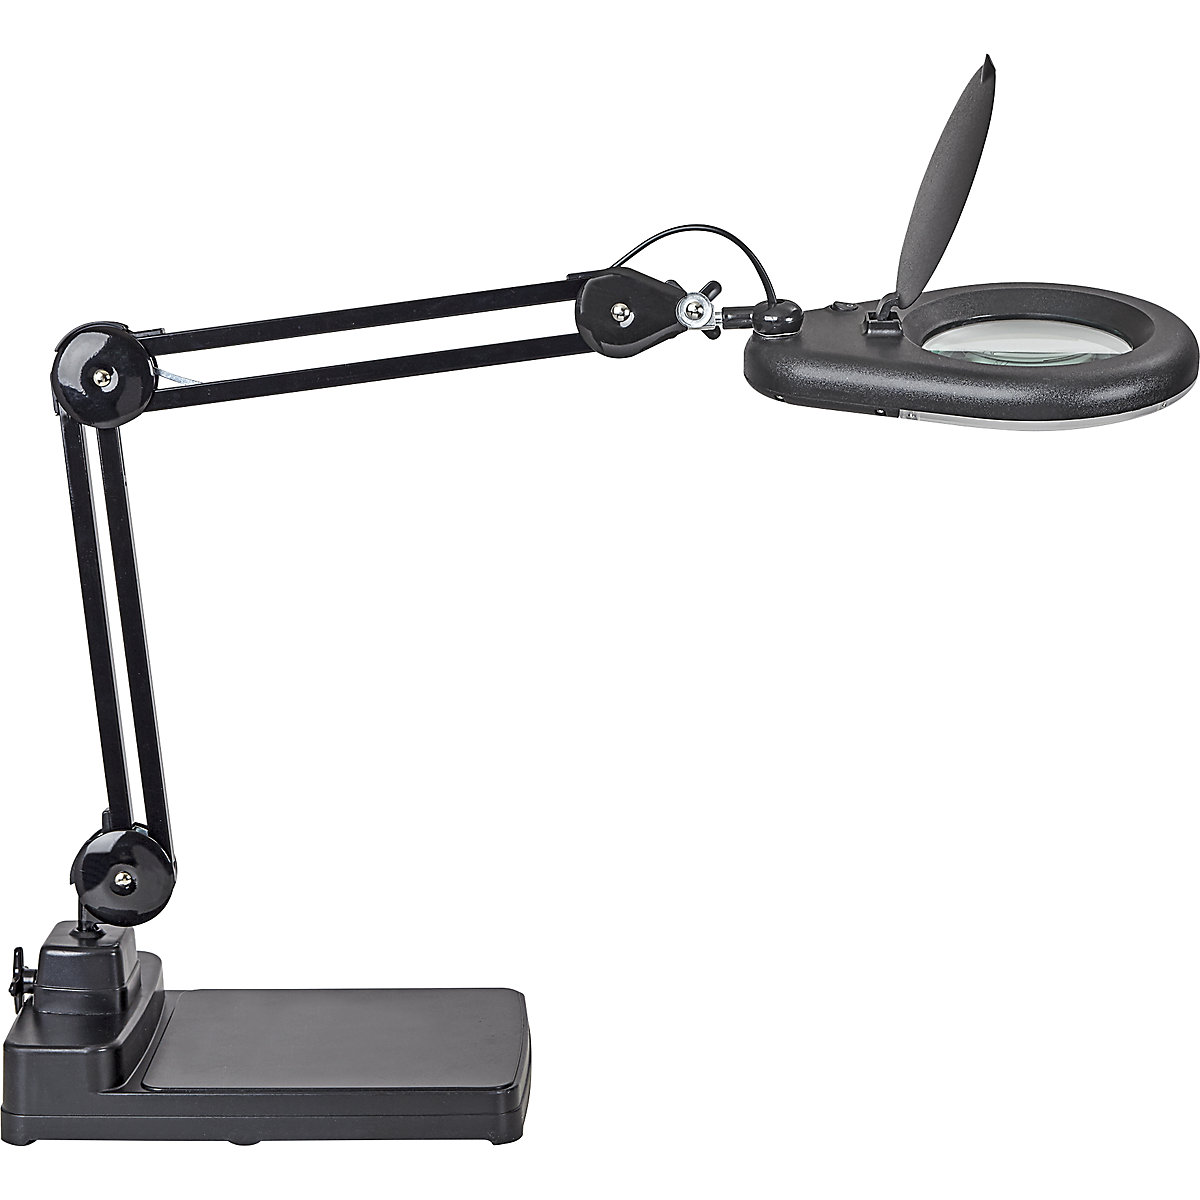 LED-loeplamp MAULviso – MAUL, armlengte 310 mm, met voet, zwart-5